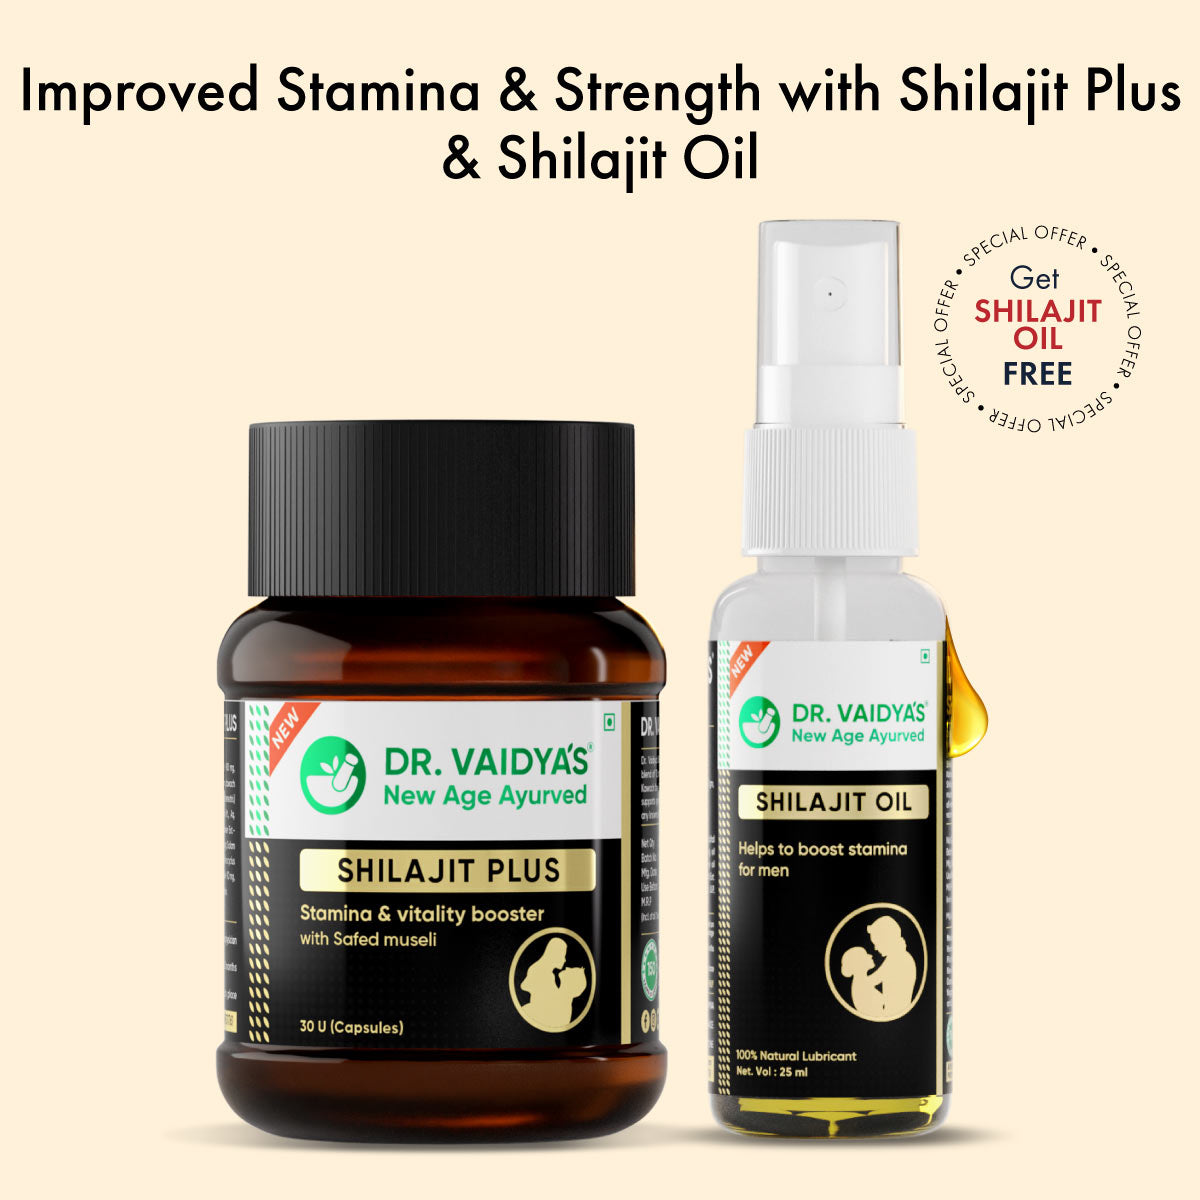 Dr. Vaidya's Shilajit Plus + FREE Shilajit Oil